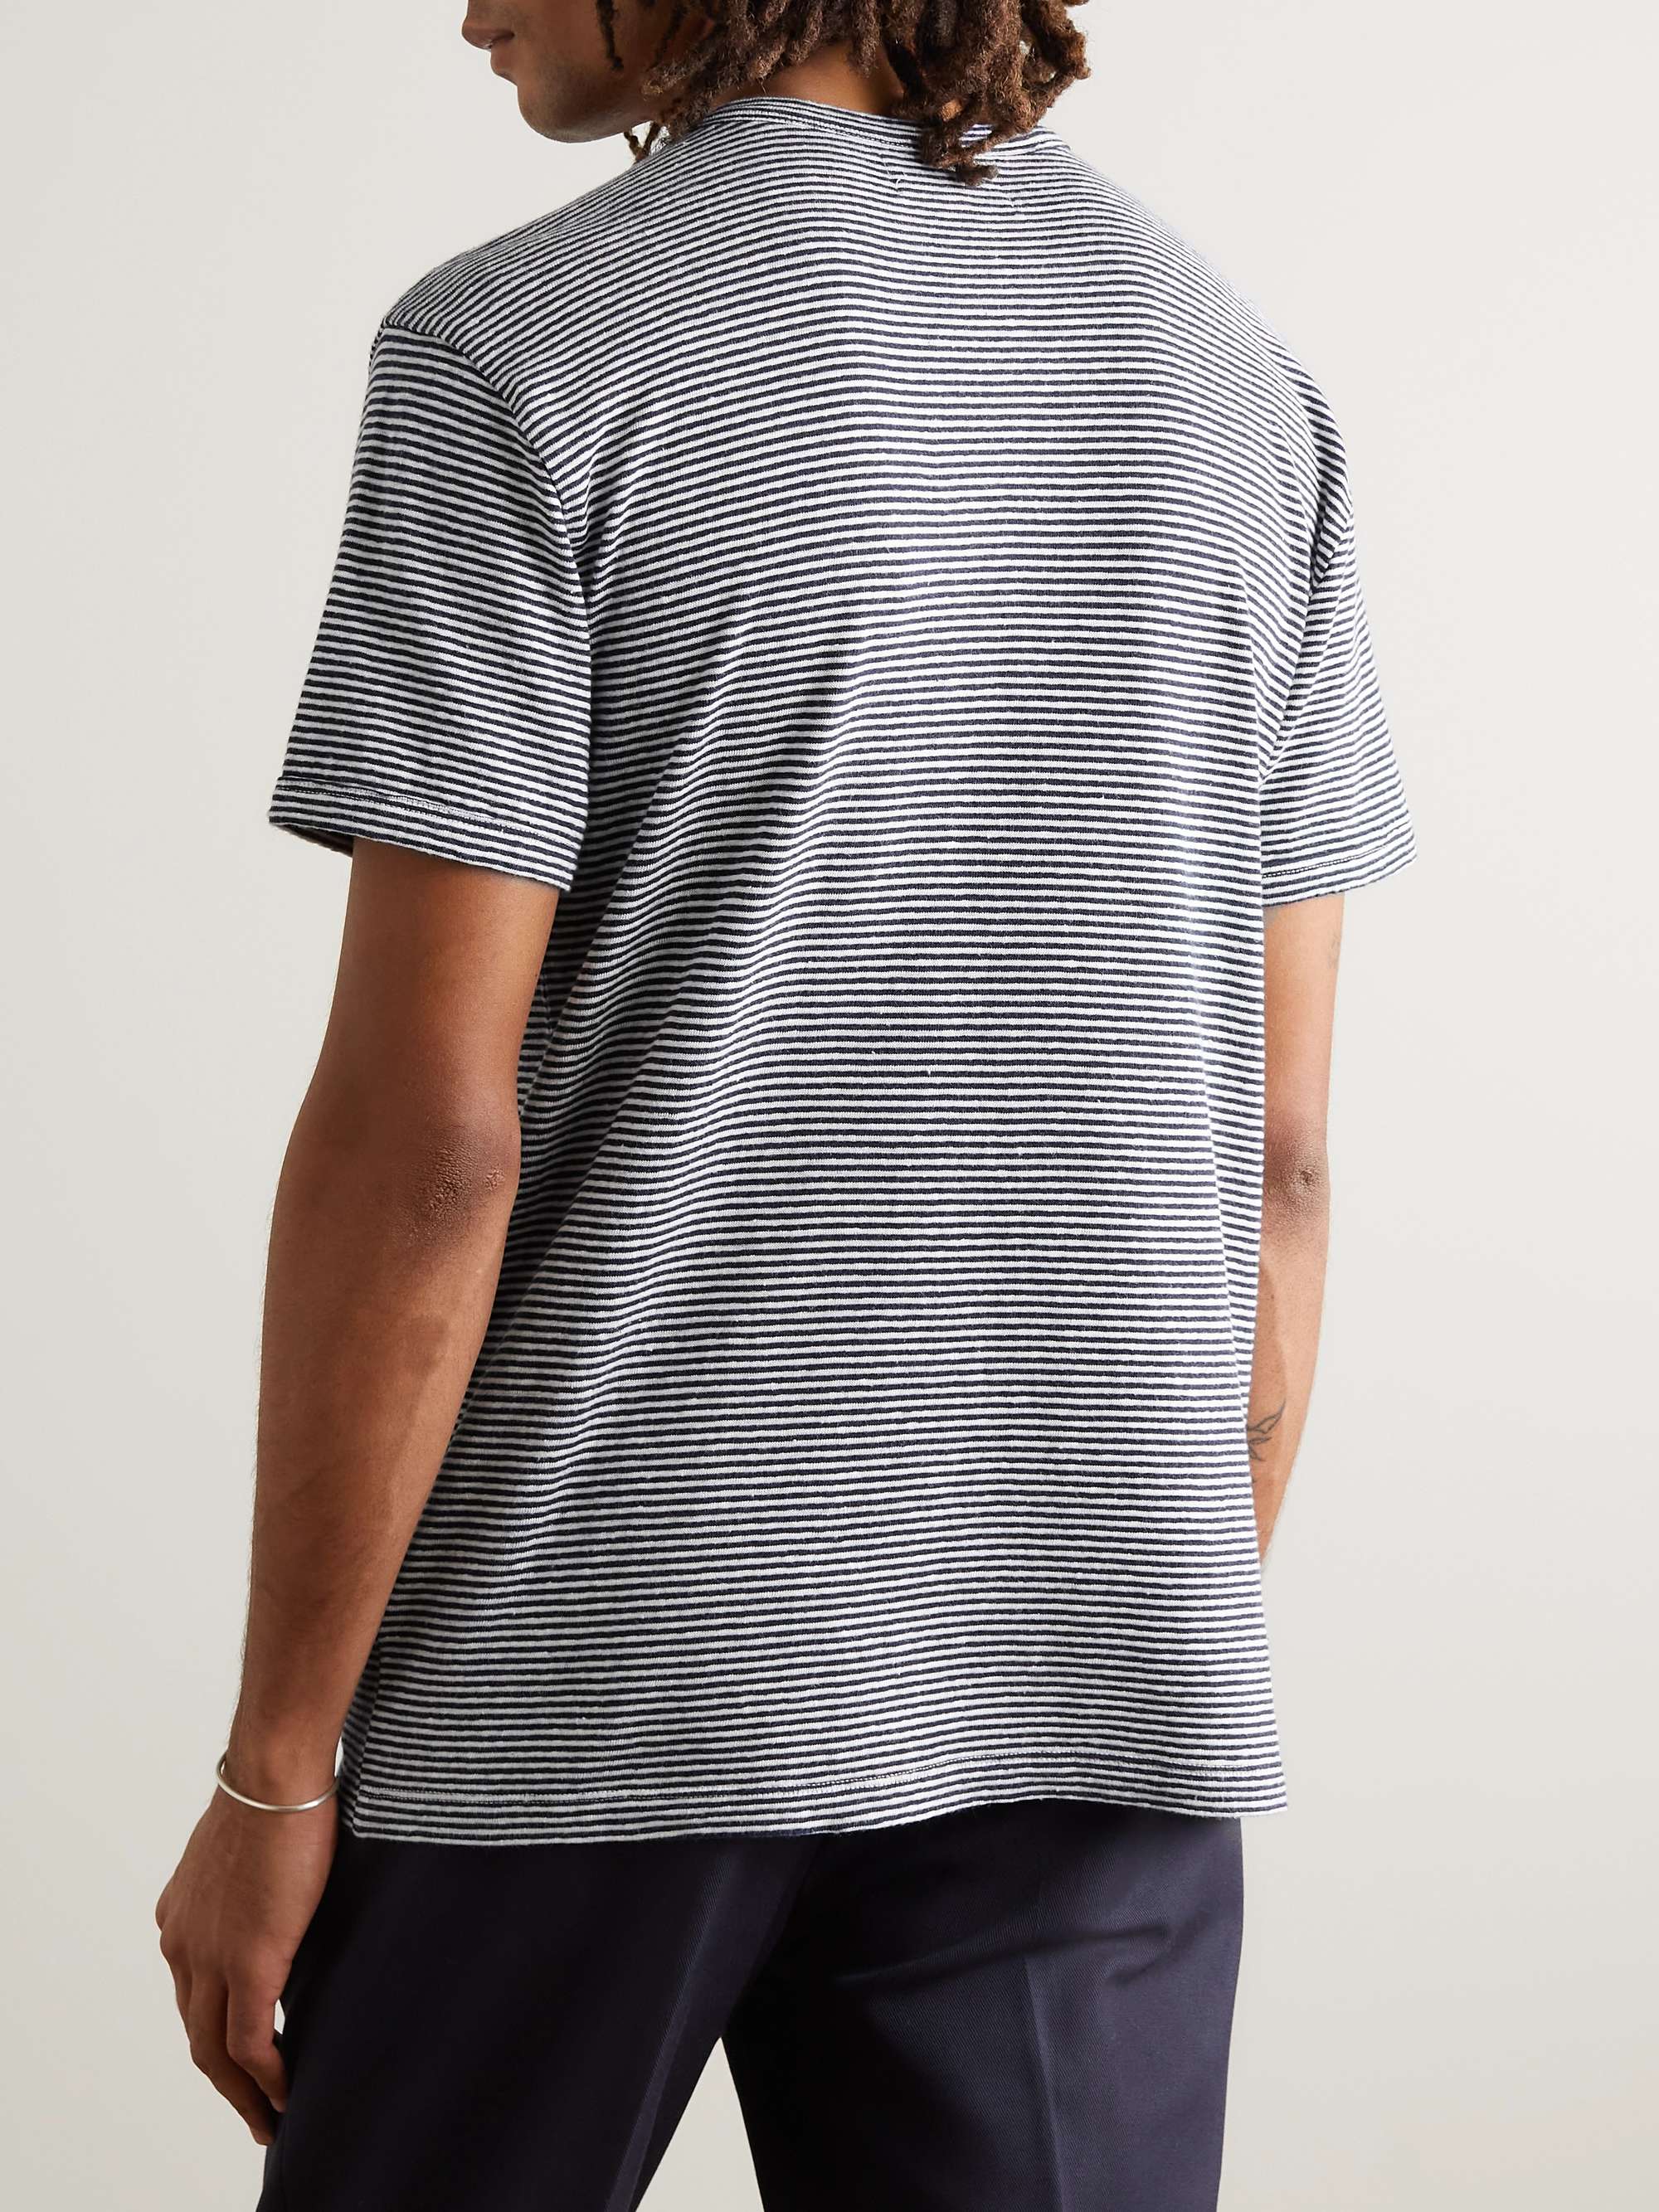 OFFICINE GÉNÉRALE Striped Cotton and Linen-Blend T-Shirt